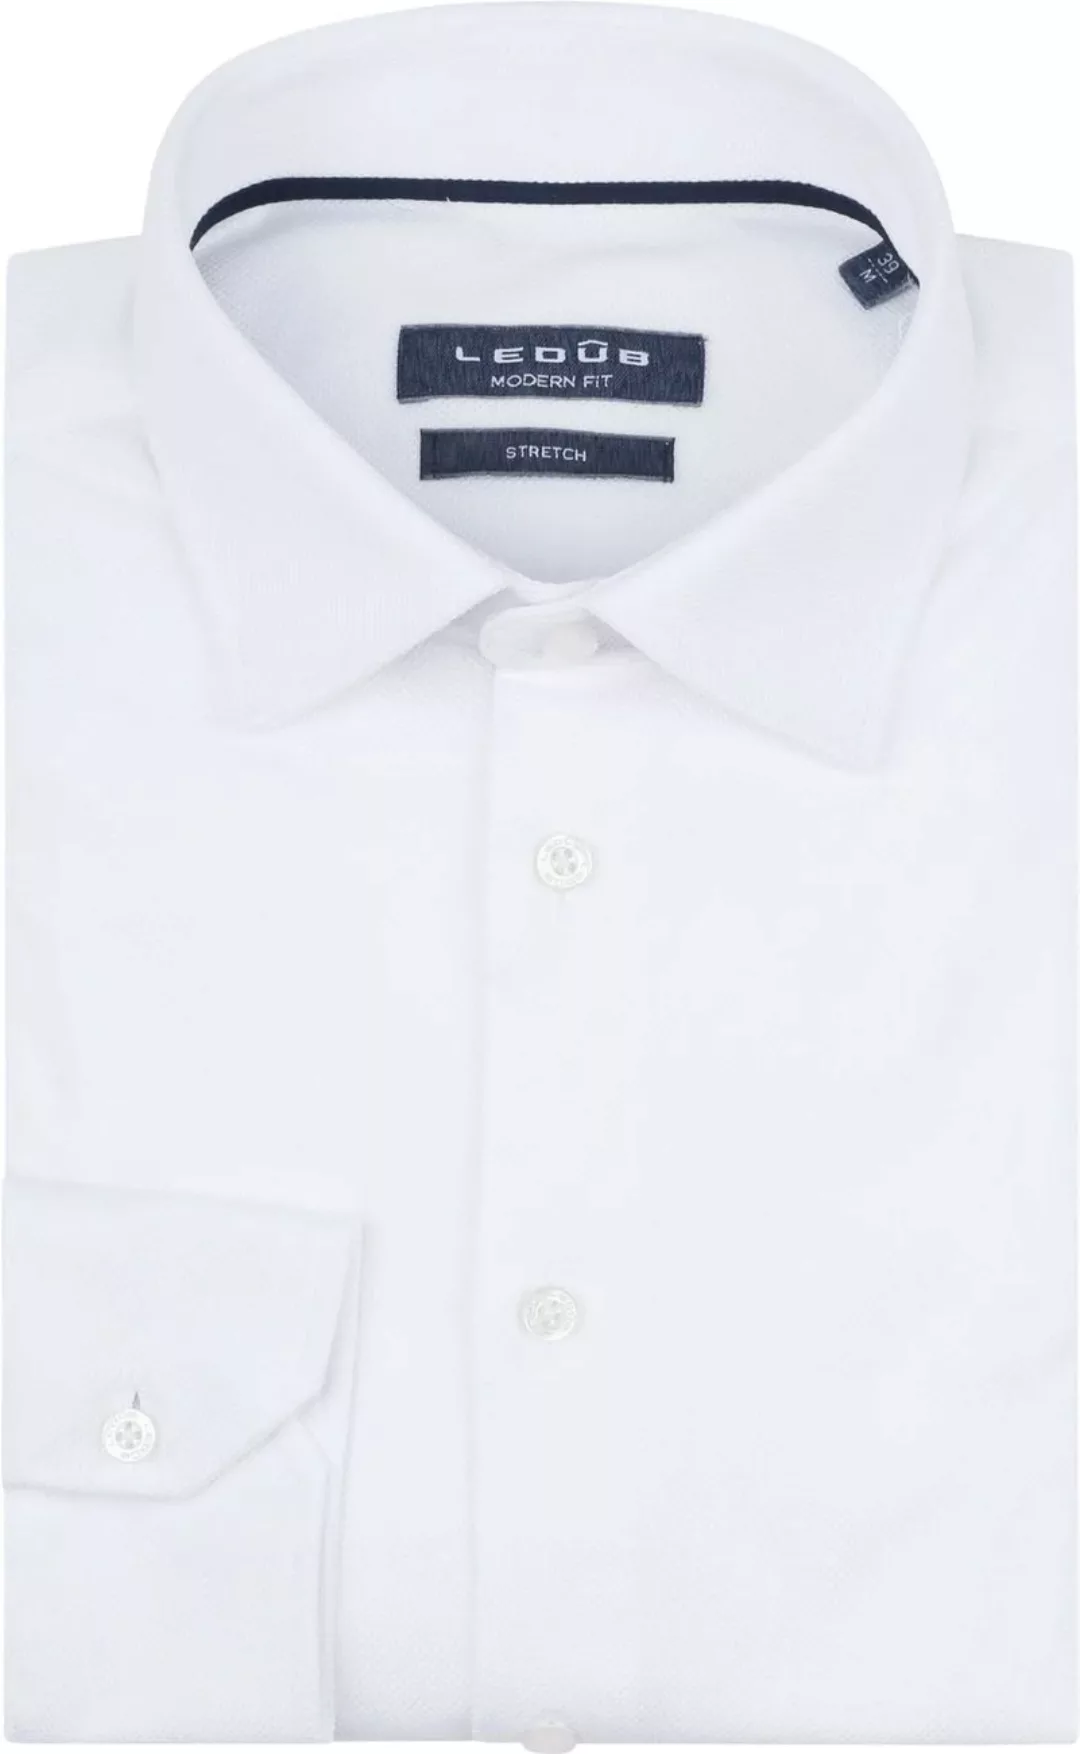 Ledub Tricot Hemd Weiß - Größe 46 günstig online kaufen